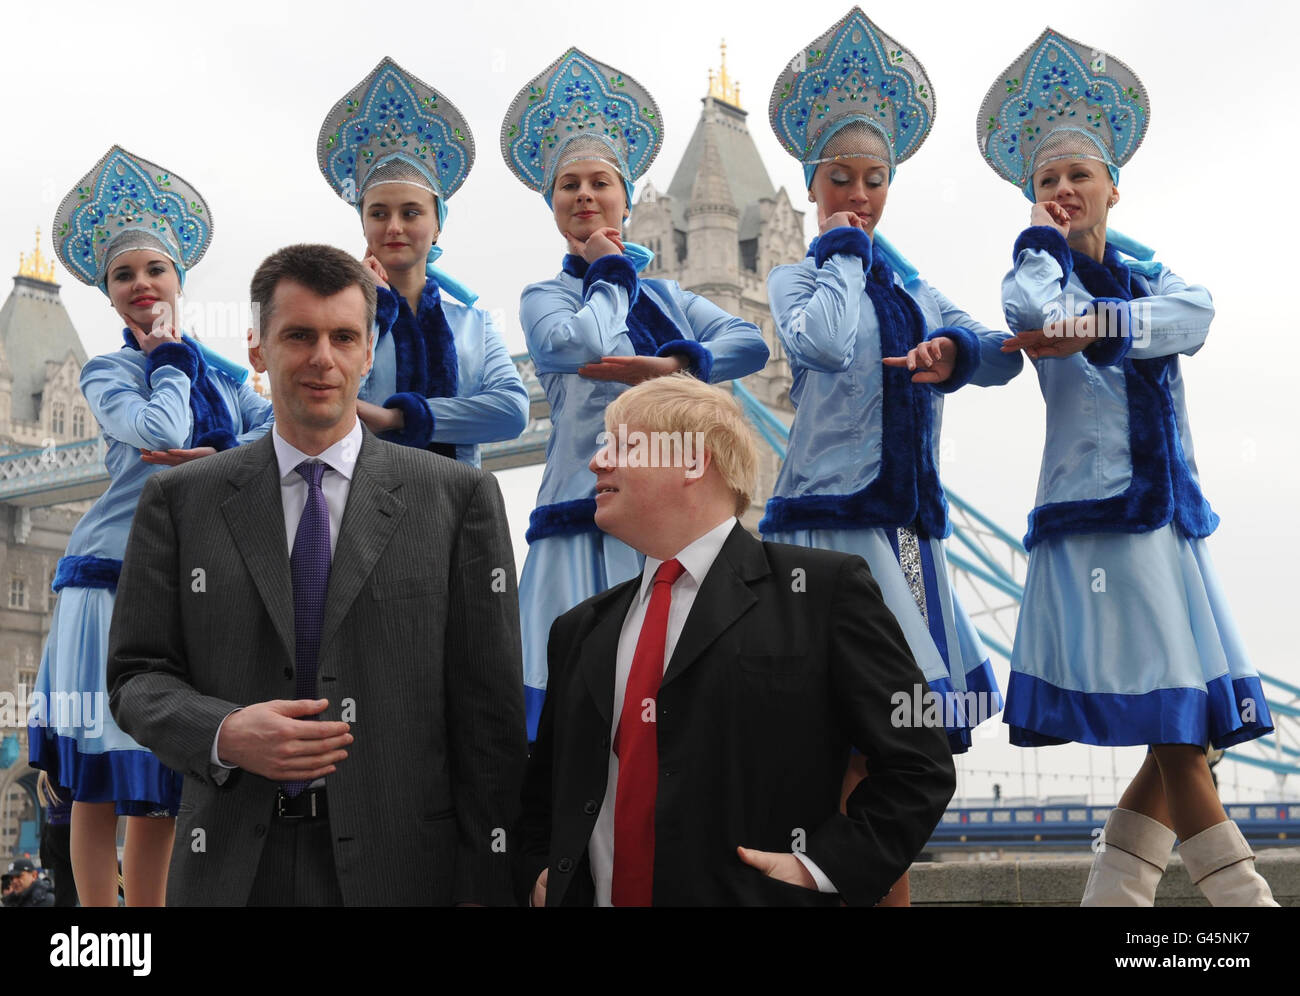 Le maire de Londres Boris Johnson rencontre l'homme d'affaires russe Mikhail Prokhorov à l'hôtel de ville de Londres aujourd'hui quand il a lancé le festival folklorique russe de Maslenitsa qui aura lieu à Trafalgar Square le dimanche 6 mars et sera une célébration du patrimoine culturel russe. Banque D'Images